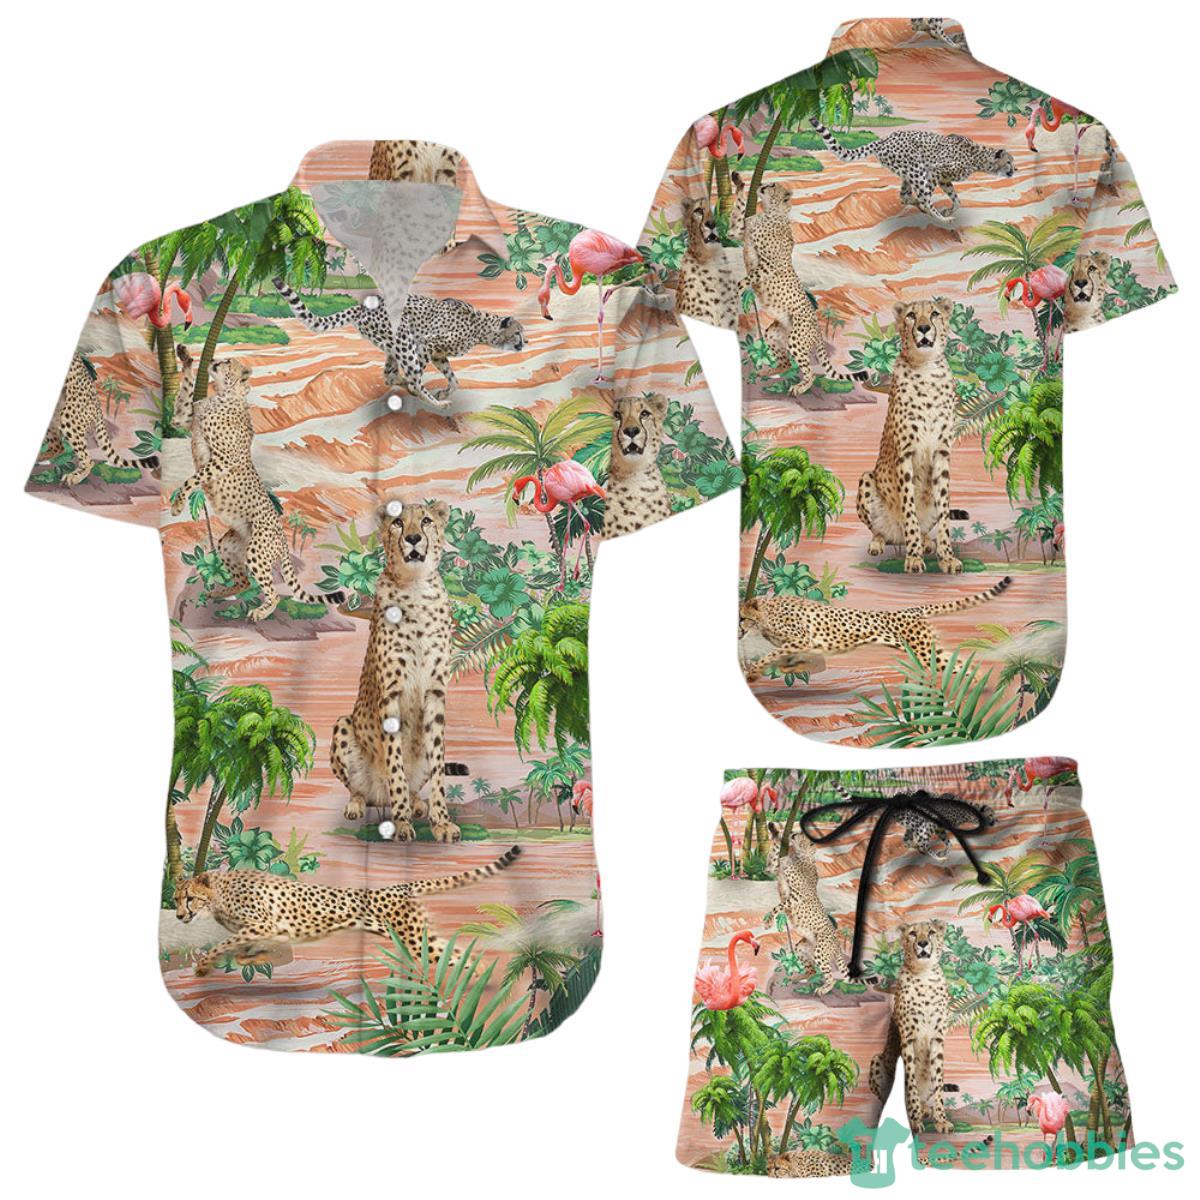 Cheetah Print Hawaiian Shirt Cheetah And Flamingo Button Down Shirts Gifts For Cheetah Lovers Product Photo 1